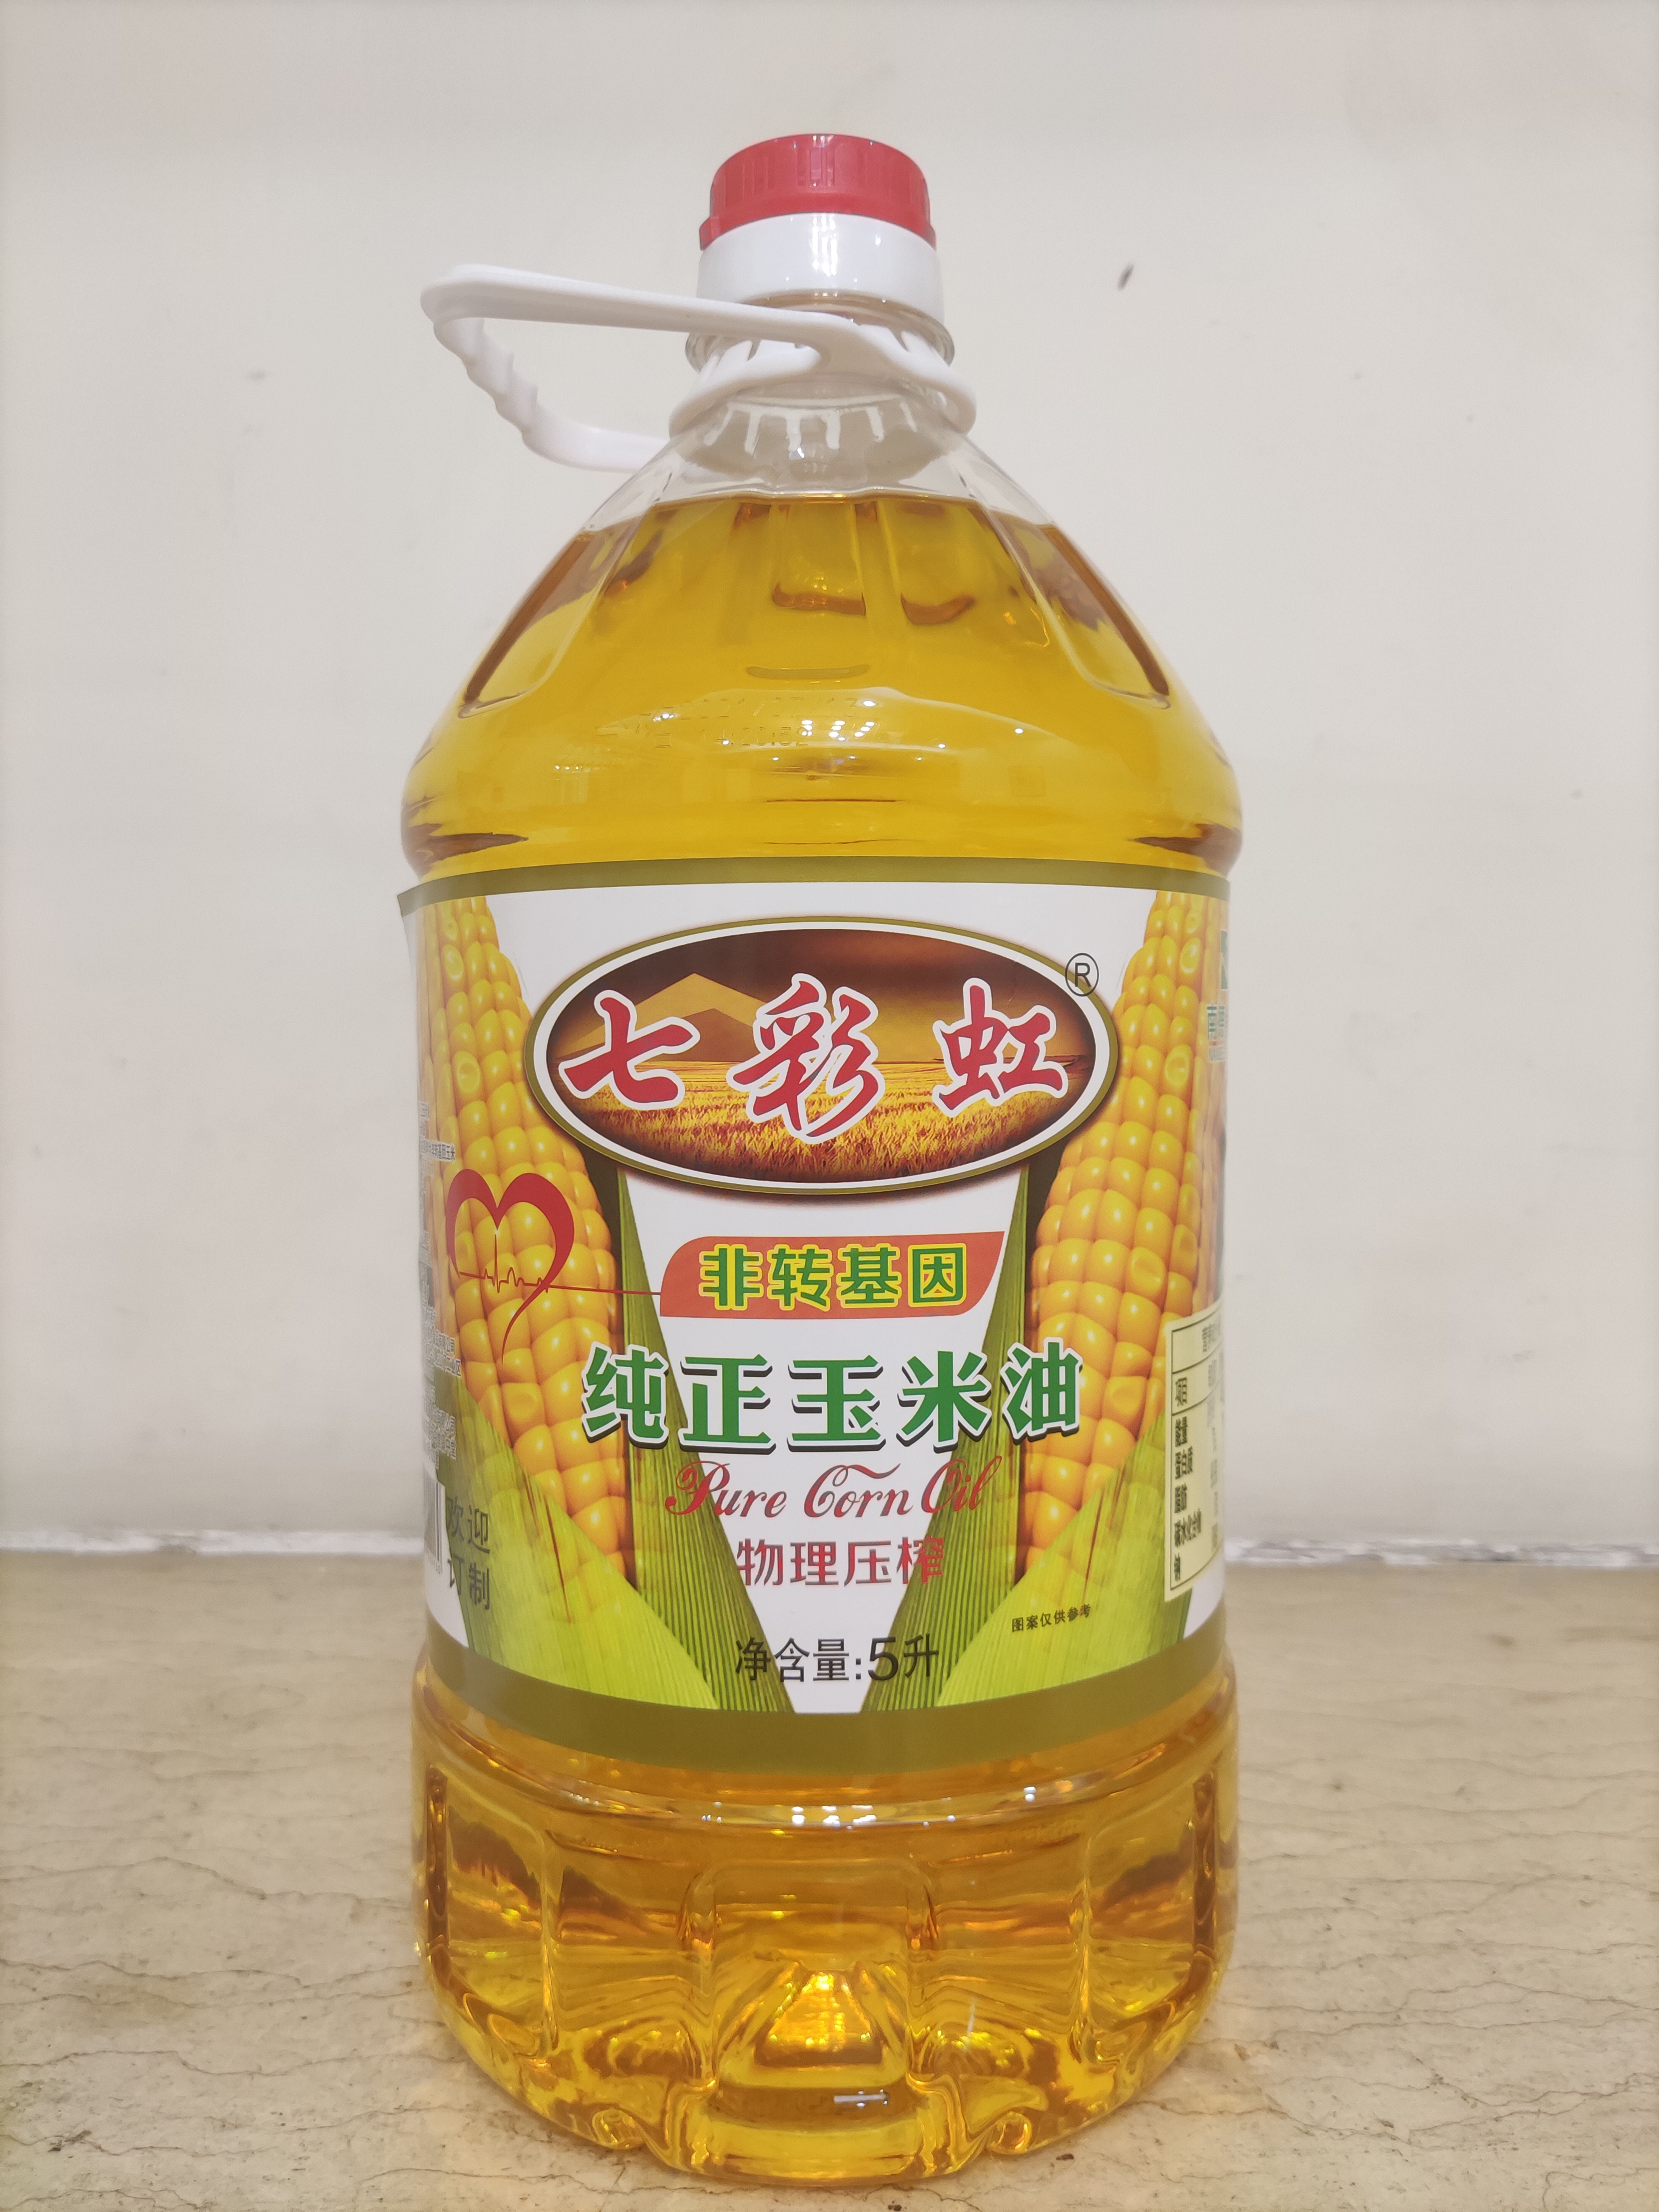 东莞市七彩虹 玉米油非转基因好油玉米油怎么吃